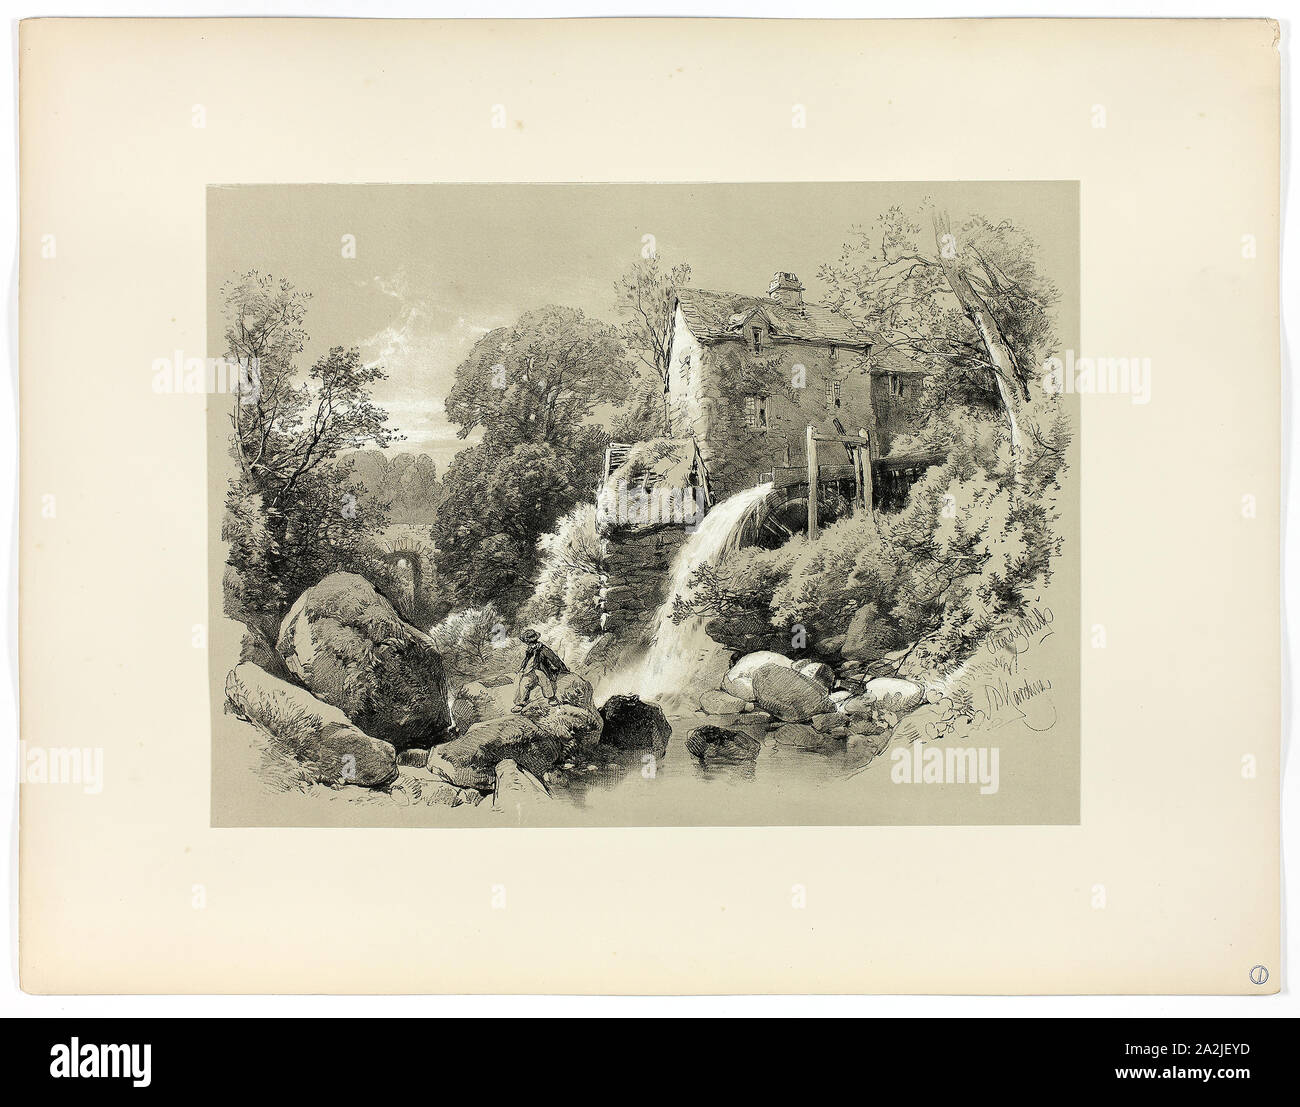 Pandy Mühle, von malerischen Auswahlen, C. 1859 - 60, James Duffield Harding, (Englisch, 1798-1863), von W. Kent und Co., England, Lithographie auf Papier veröffentlicht, 430 × 560 mm (sekundäre Unterstützung Stockfoto